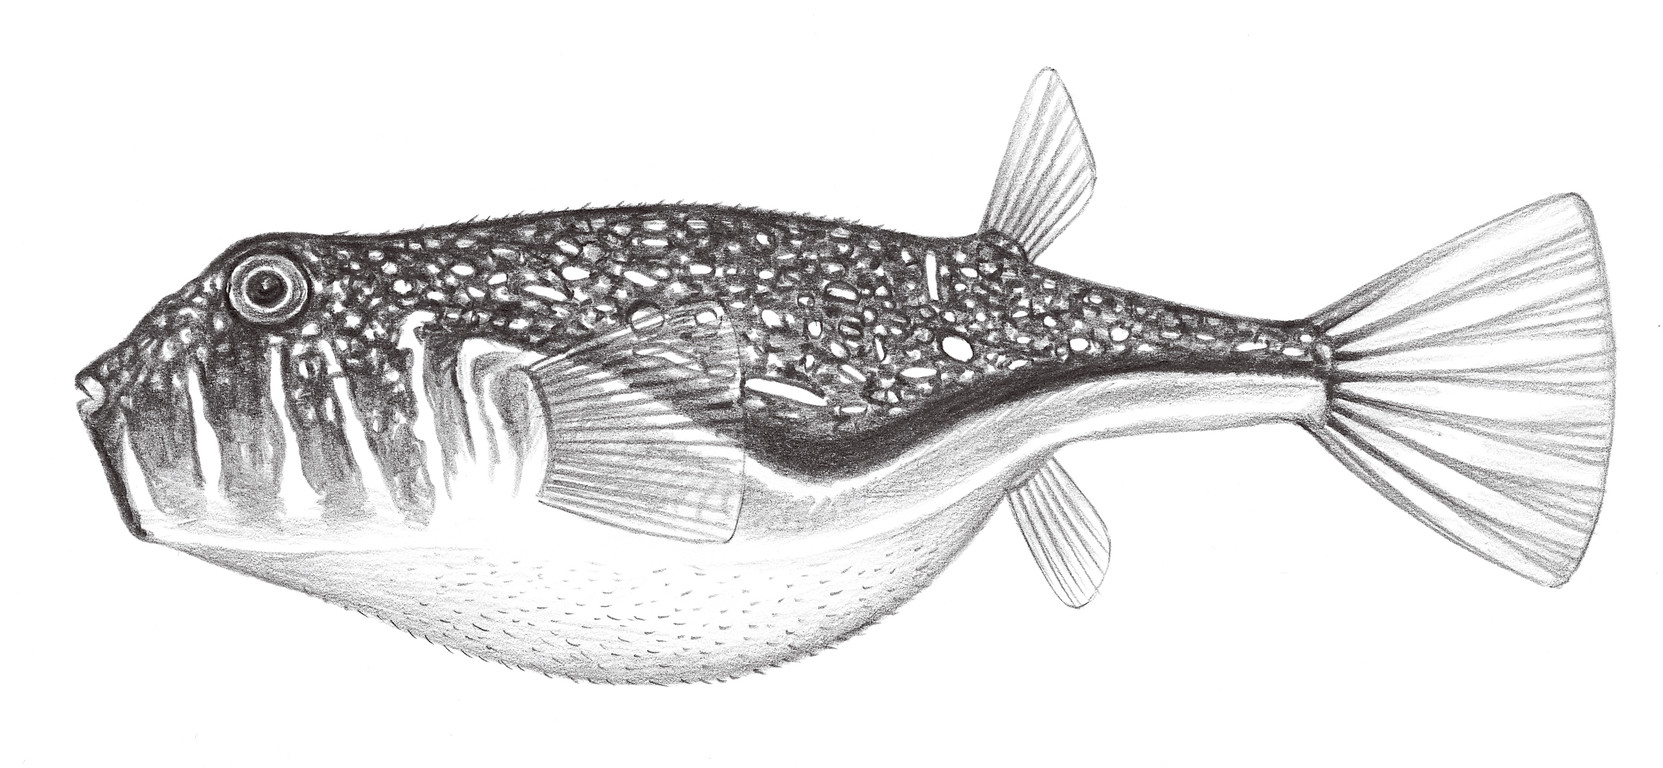 2555.	頭紋窄額魨 Torquigener hypselogenion (Bleeker, 1852)